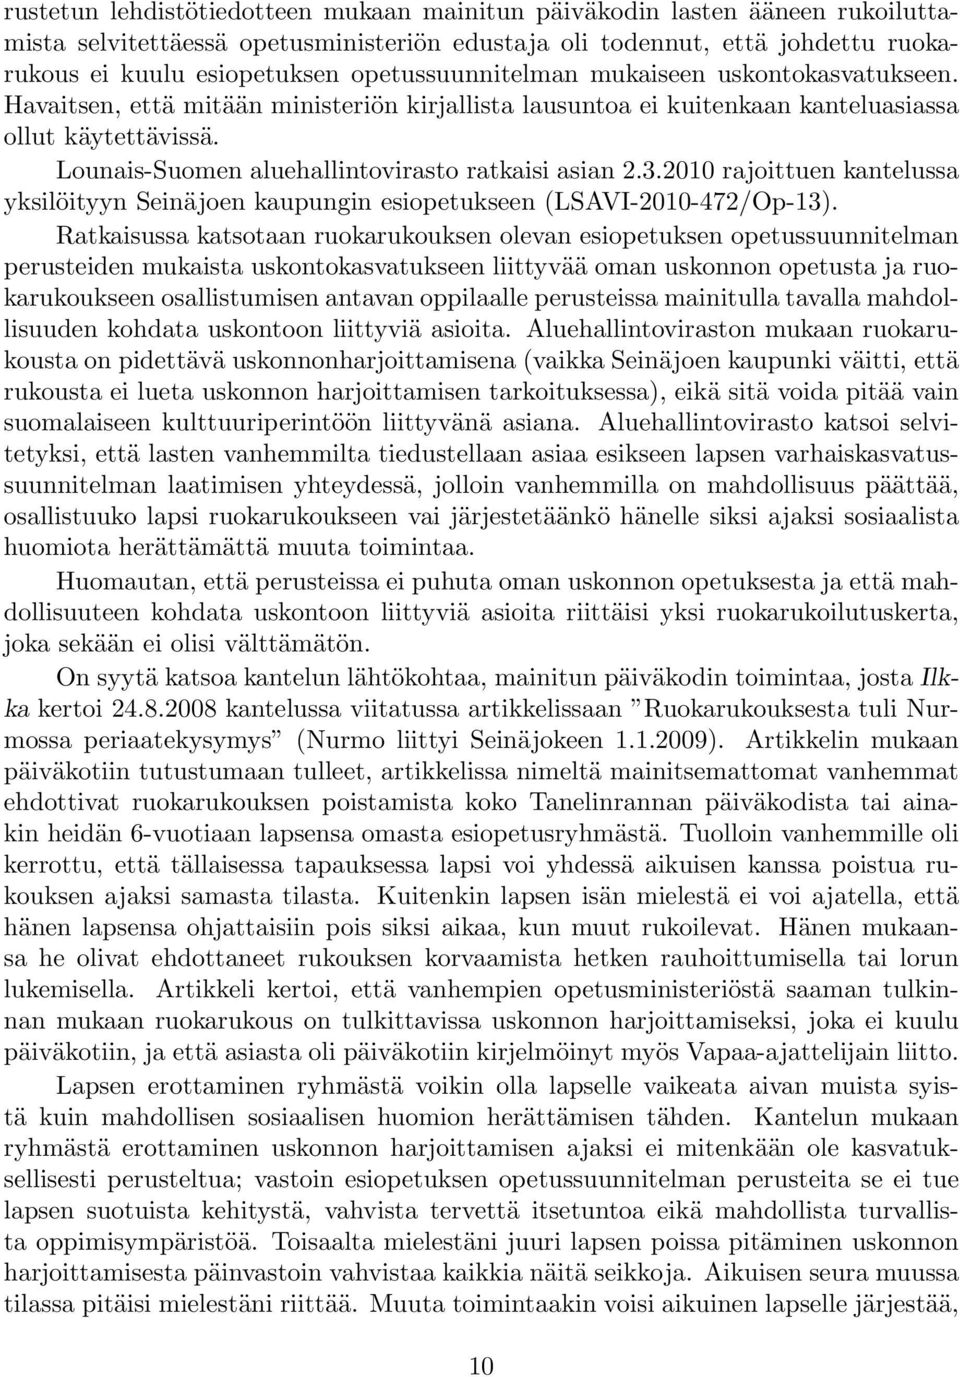 Lounais-Suomen aluehallintovirasto ratkaisi asian 2.3.2010 rajoittuen kantelussa yksilöityyn Seinäjoen kaupungin esiopetukseen (LSAVI-2010-472/Op-13).